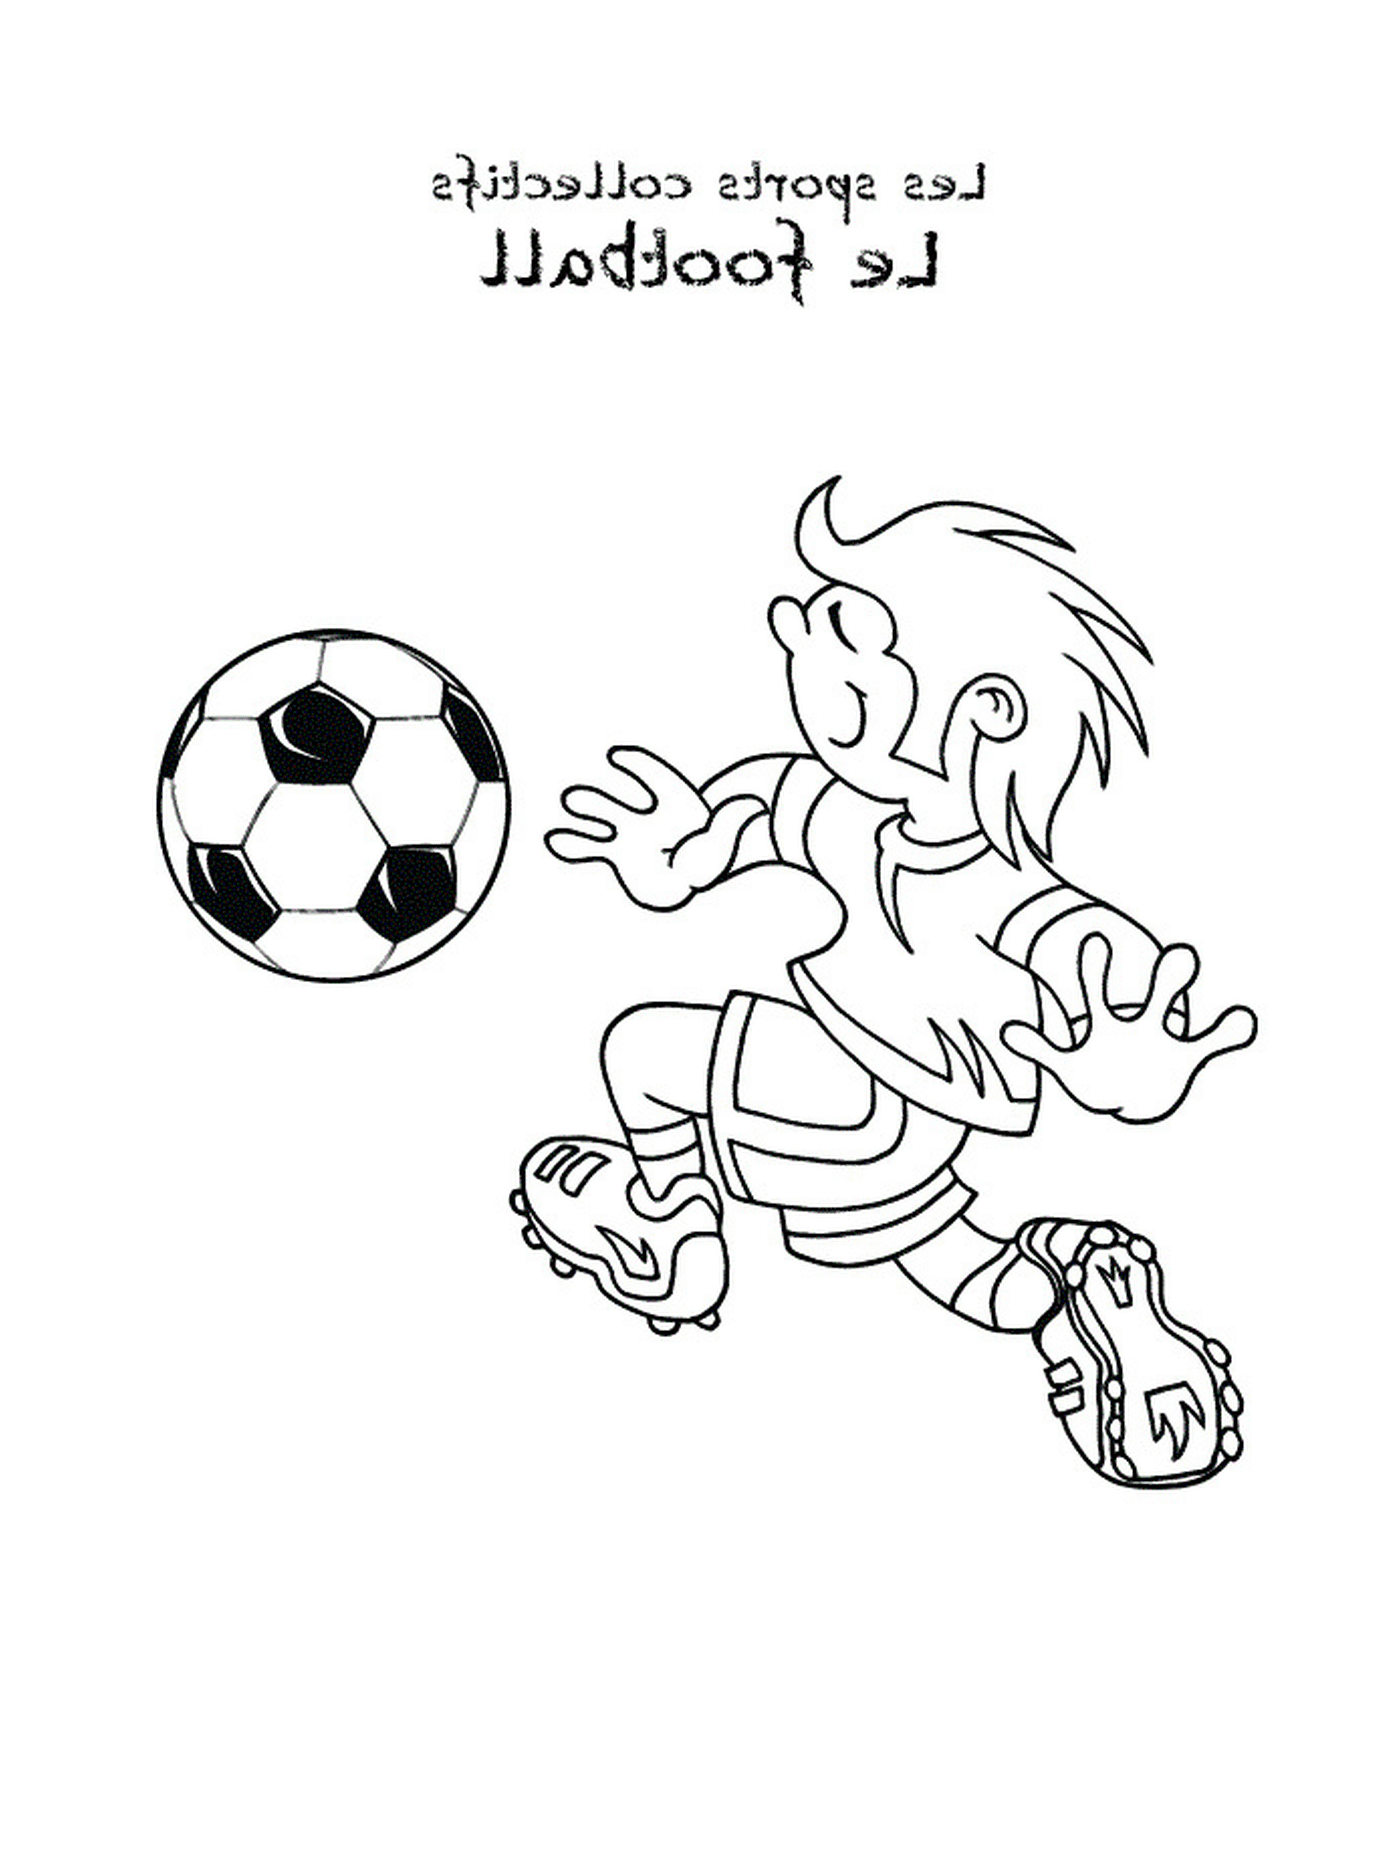   Un enfant joue au foot 